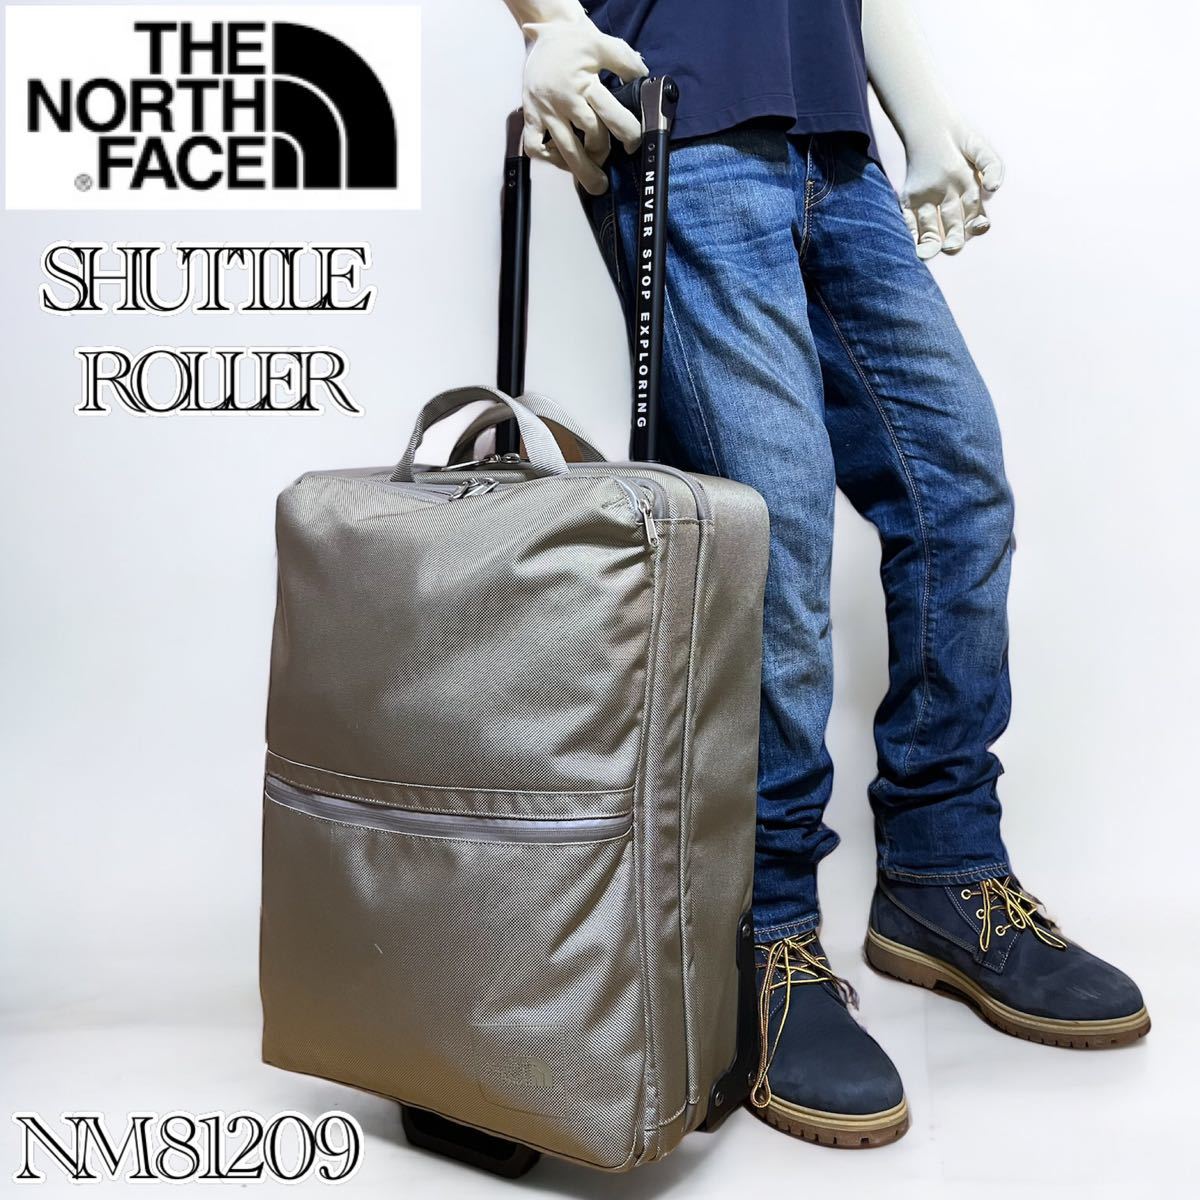 新品本物 【希少】THE NORTH カーキ スーツケース キャリーバッグ NM81209 シャトルローラー ノースフェイス ROLLER SHUTTLE FACE ザ・ノース・フェイス